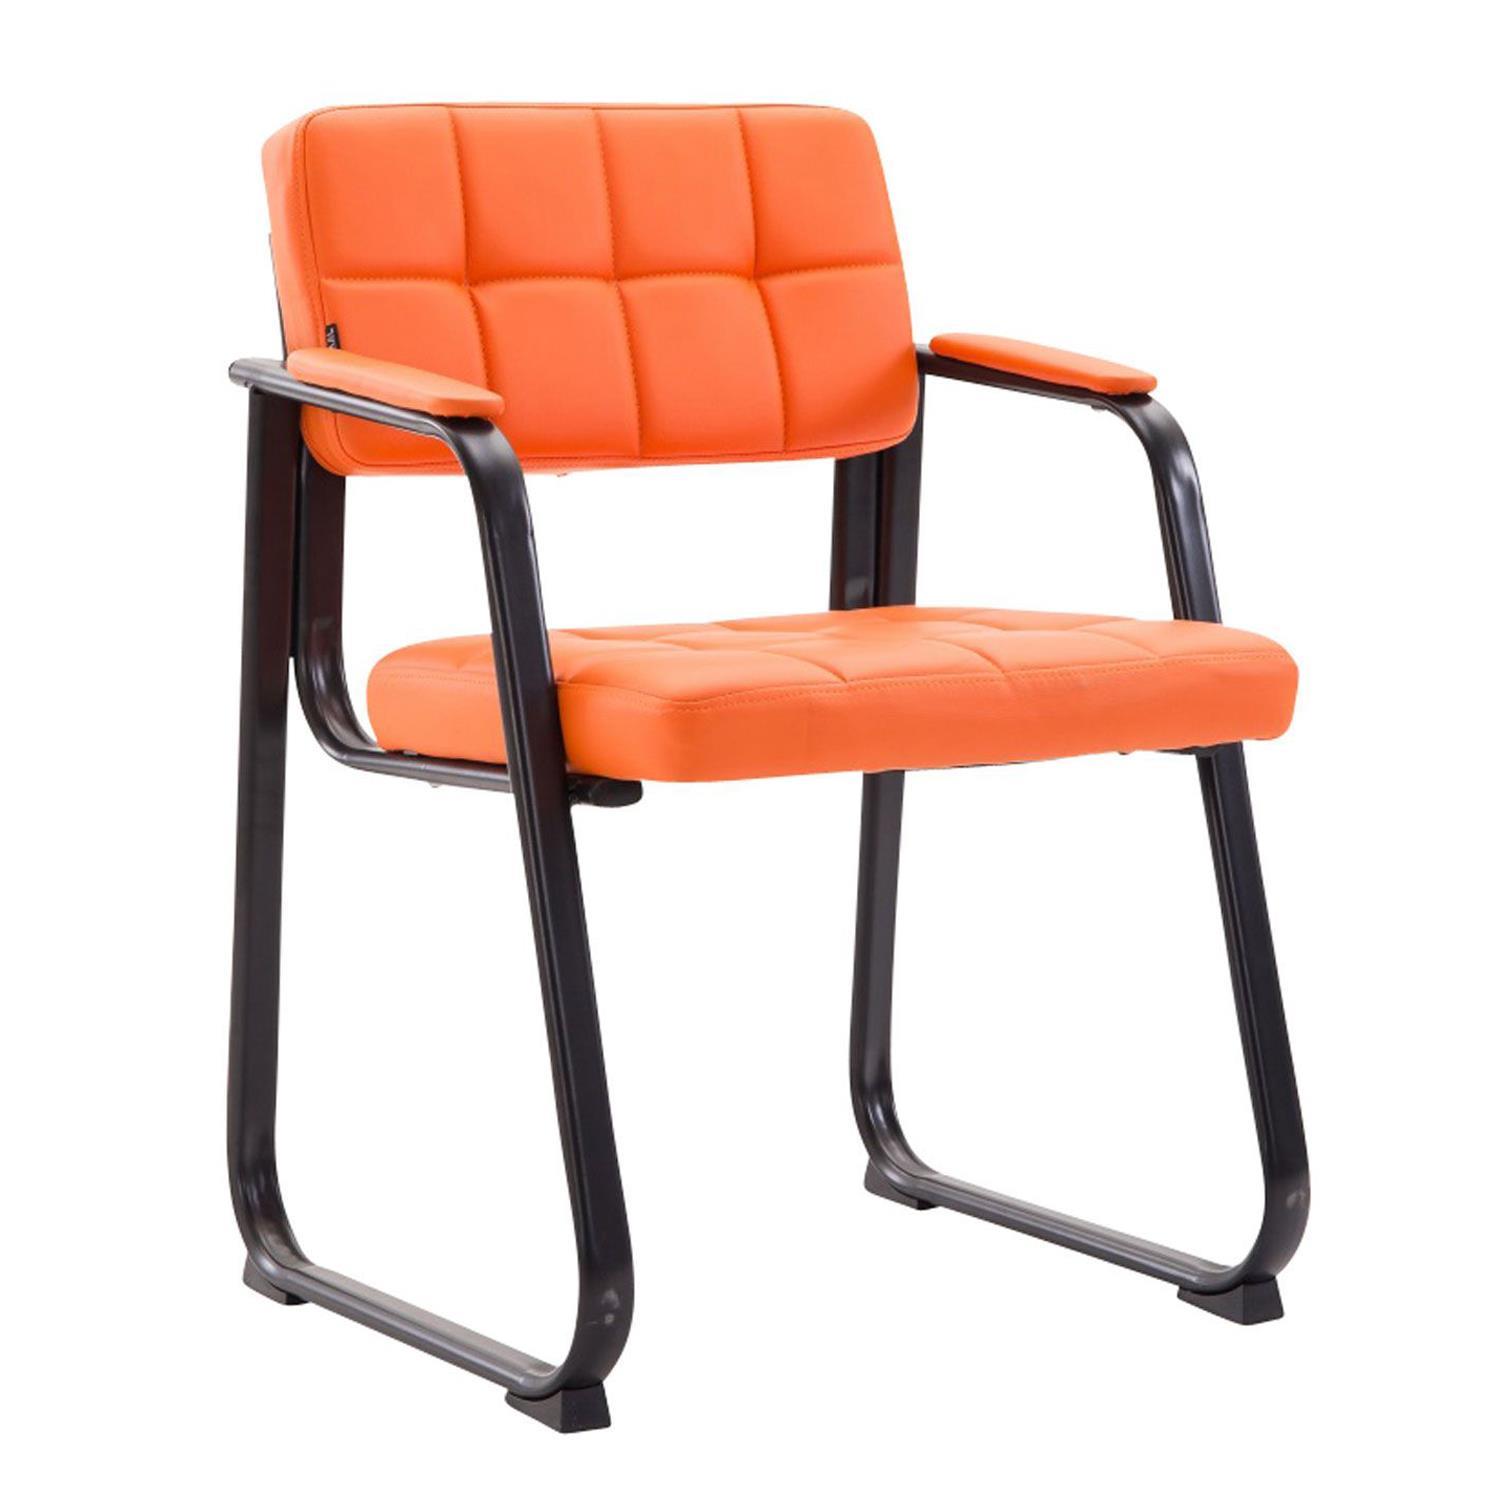 Cadeira de Visita CABANA, Design Moderno, Em Pele, Cor Laranja